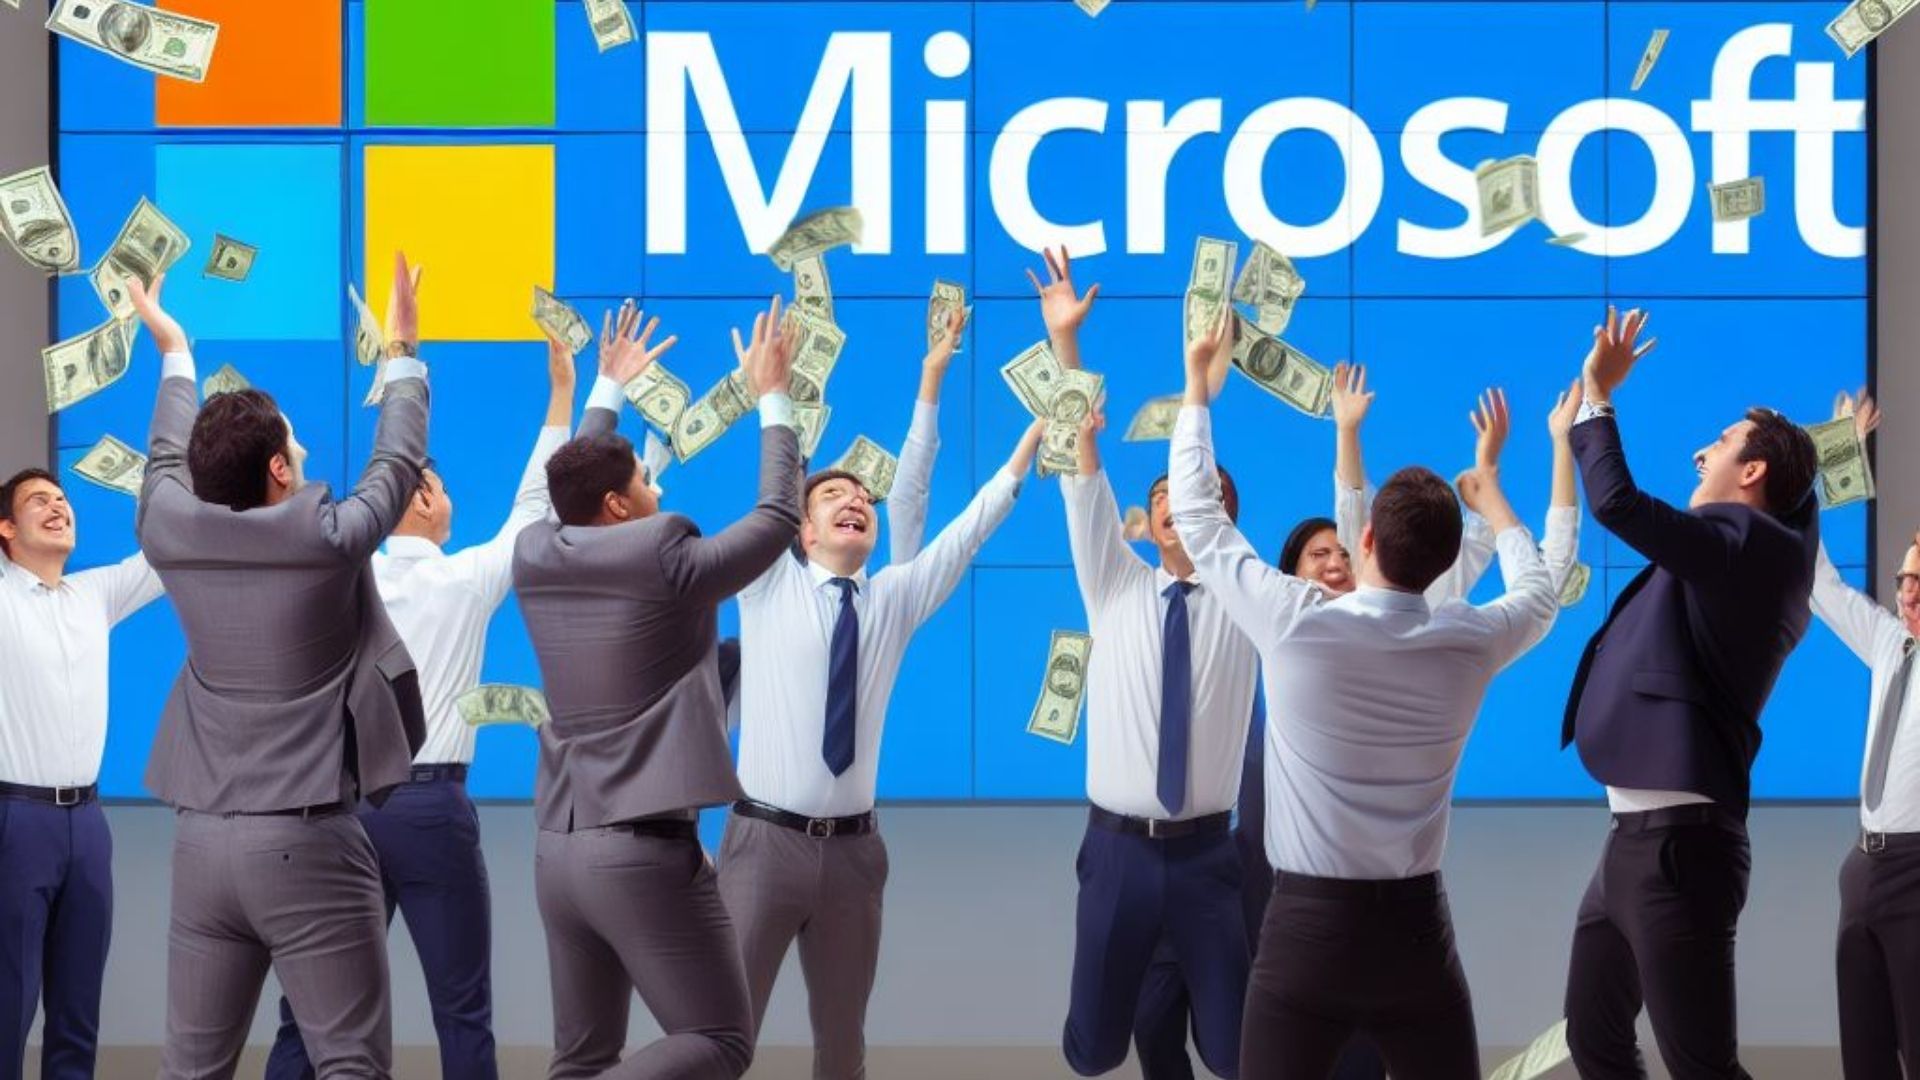 Empleados de Microsoft lanzan dinero al aire